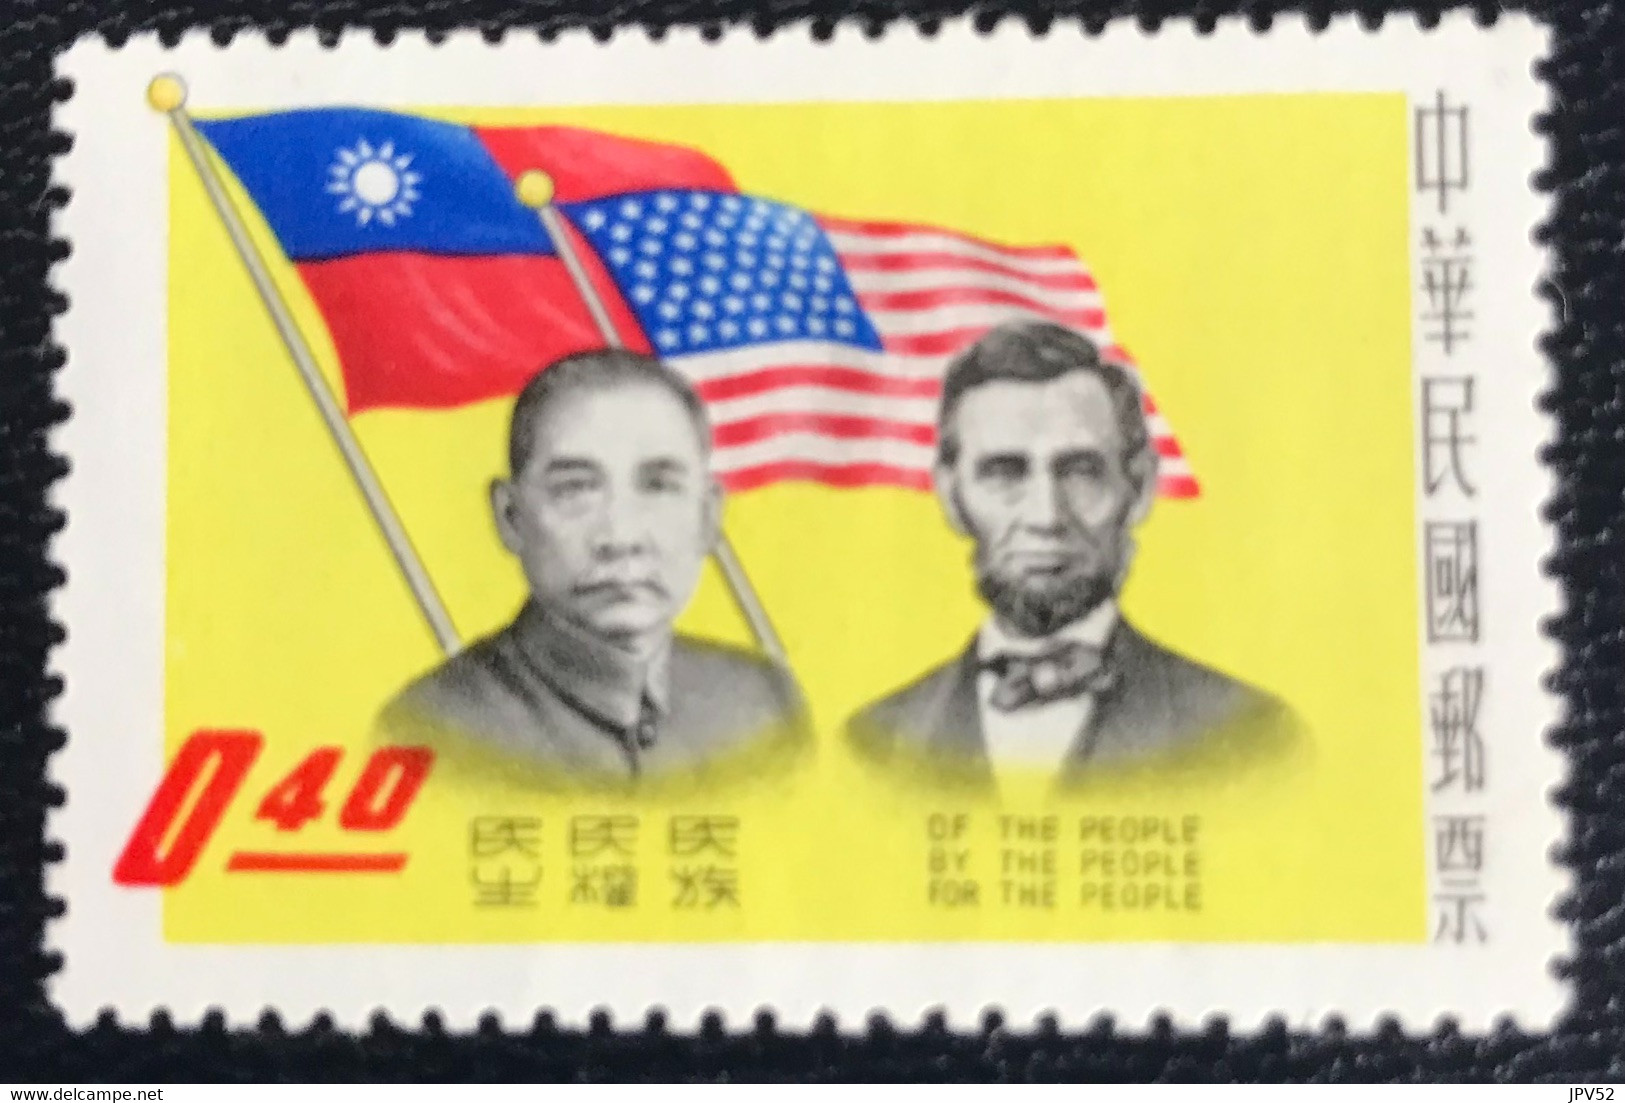 Taiwan - Formosa - Republic Of China - P5/41 - MH - 1959 - Michel 350A - Leiders Van De Democratie - Nuevos